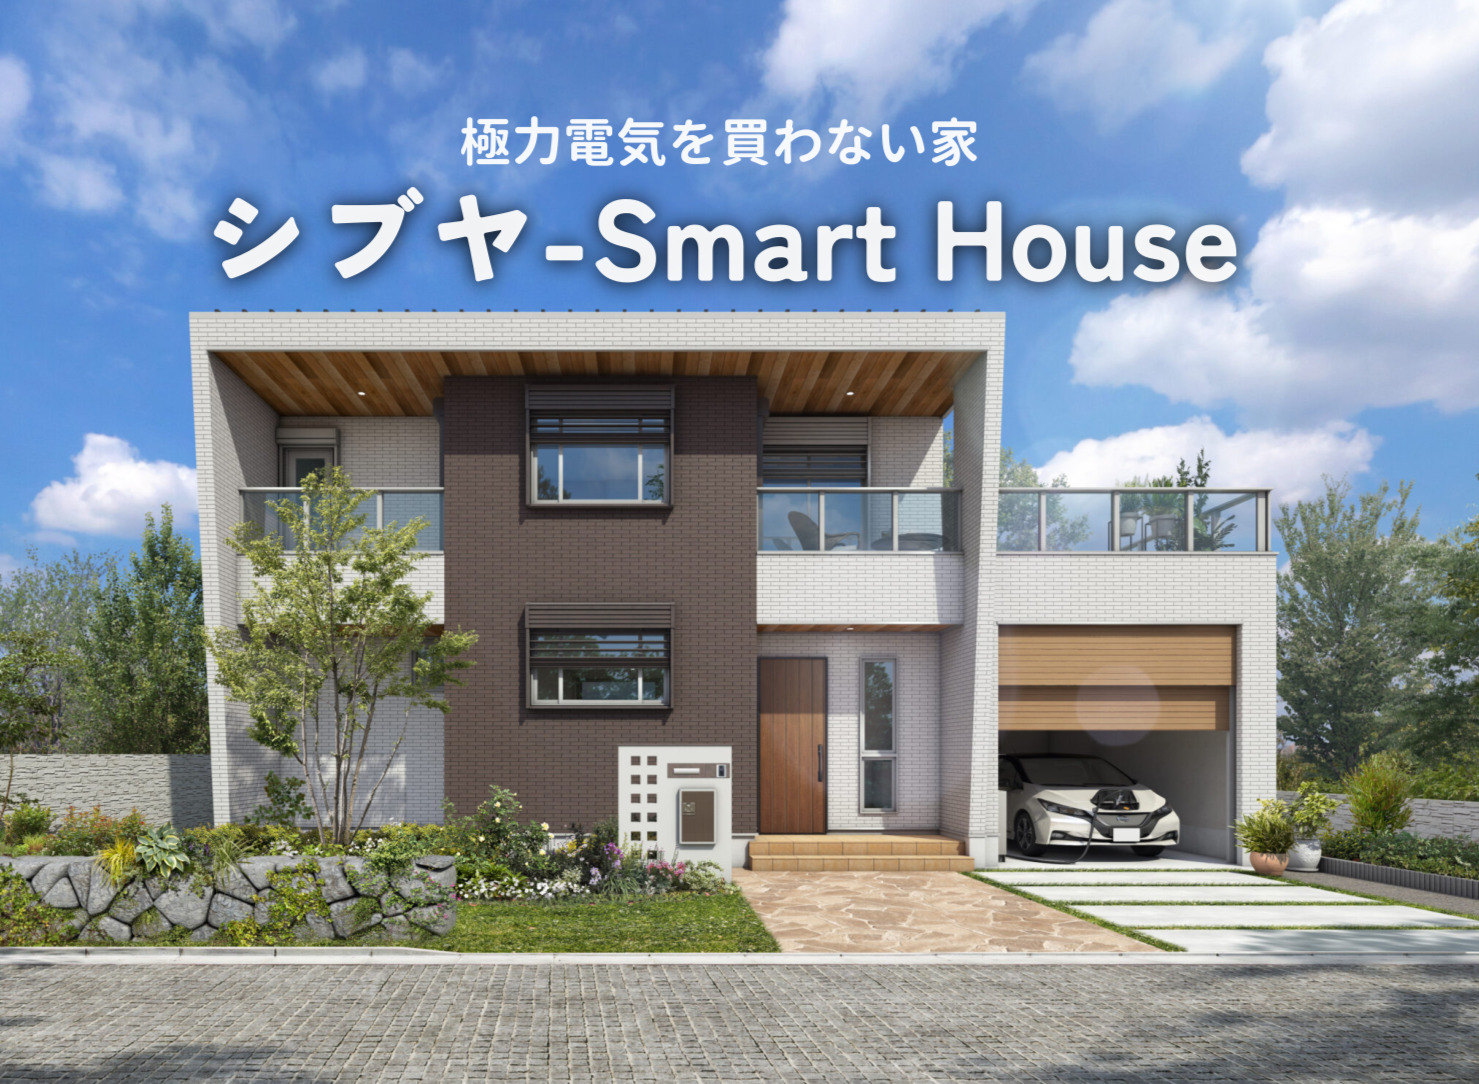 「シブヤ-Smart House」スタートです。